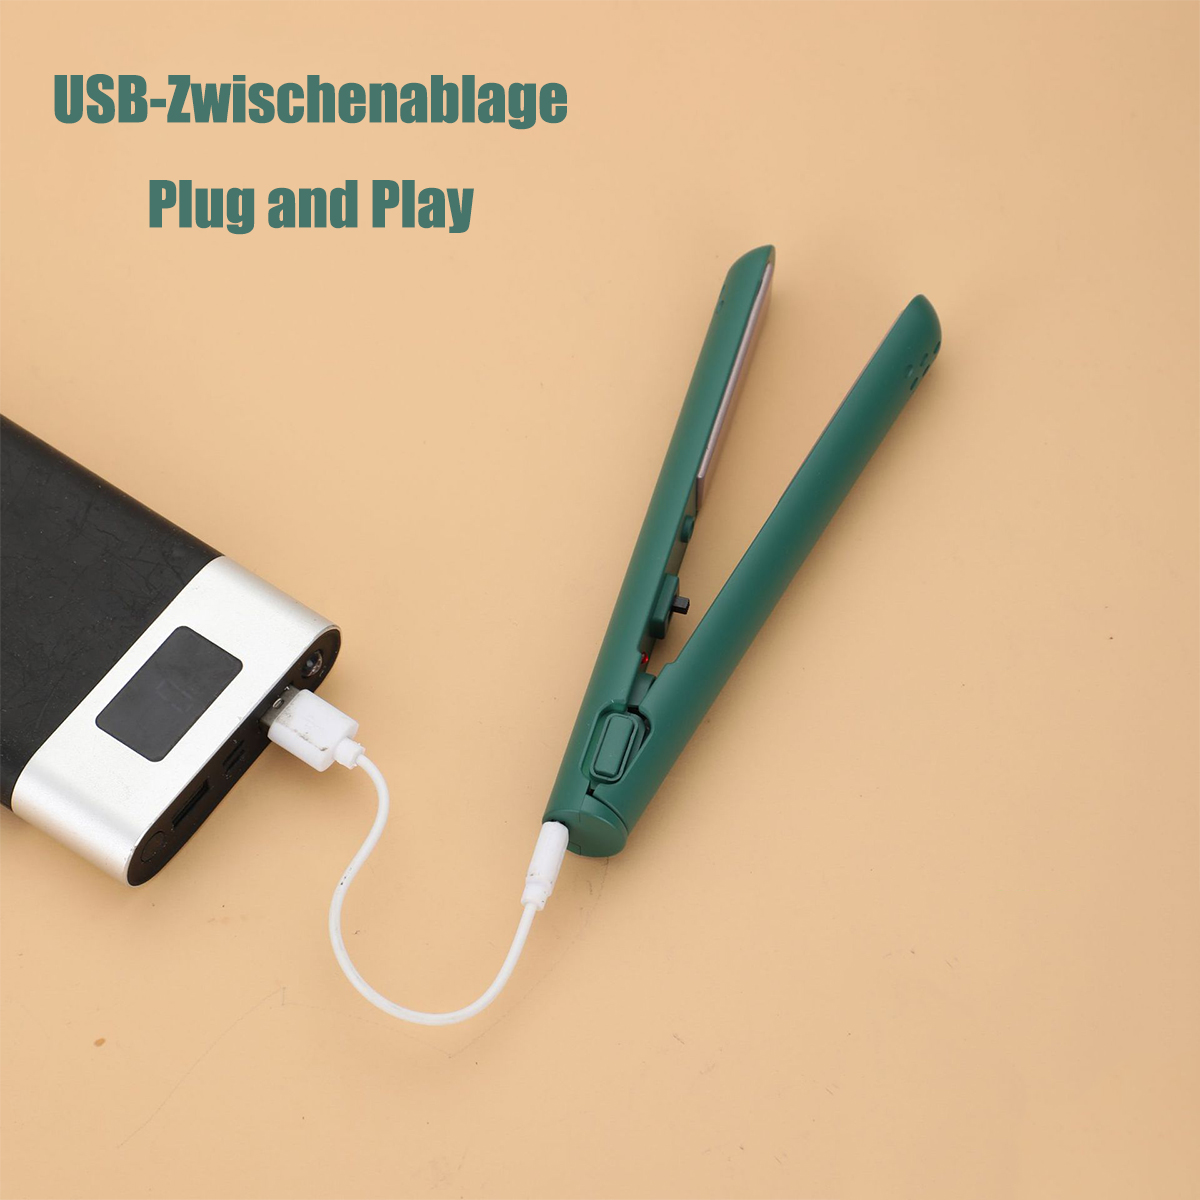 SHAOKE Kleines Power-Curling-Eisen Temperaturstufen: USB-Schnittstelle mit aus 1 Turmalin-Keramik Lockenstab